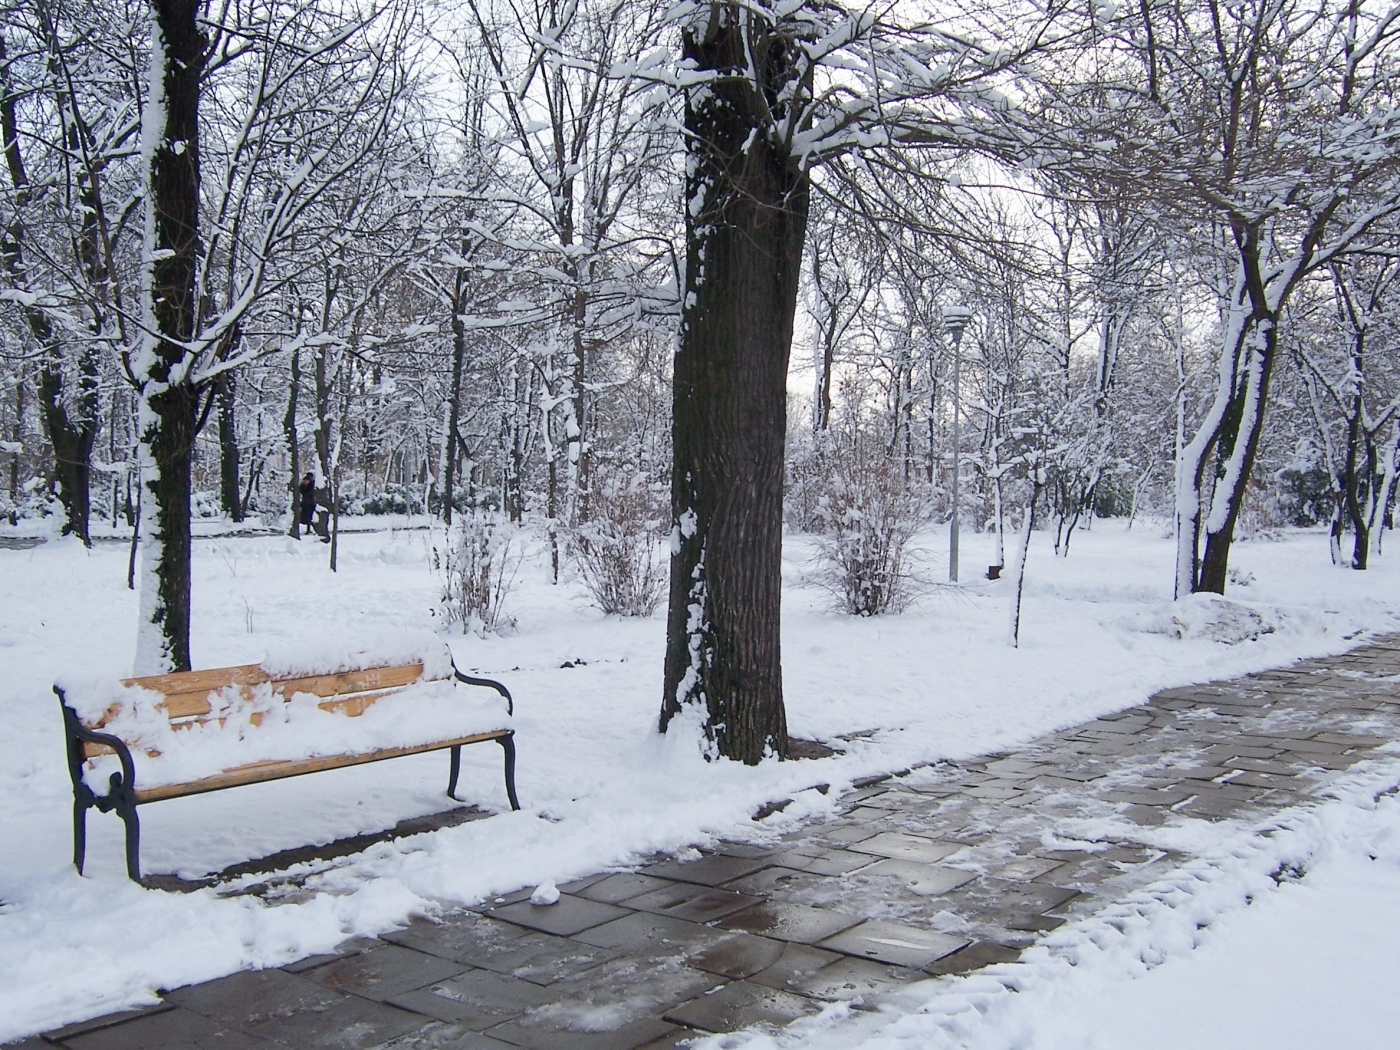 Скачать обои бесплатно Снег, Зима, Пейзаж картинка на рабочий стол ПК